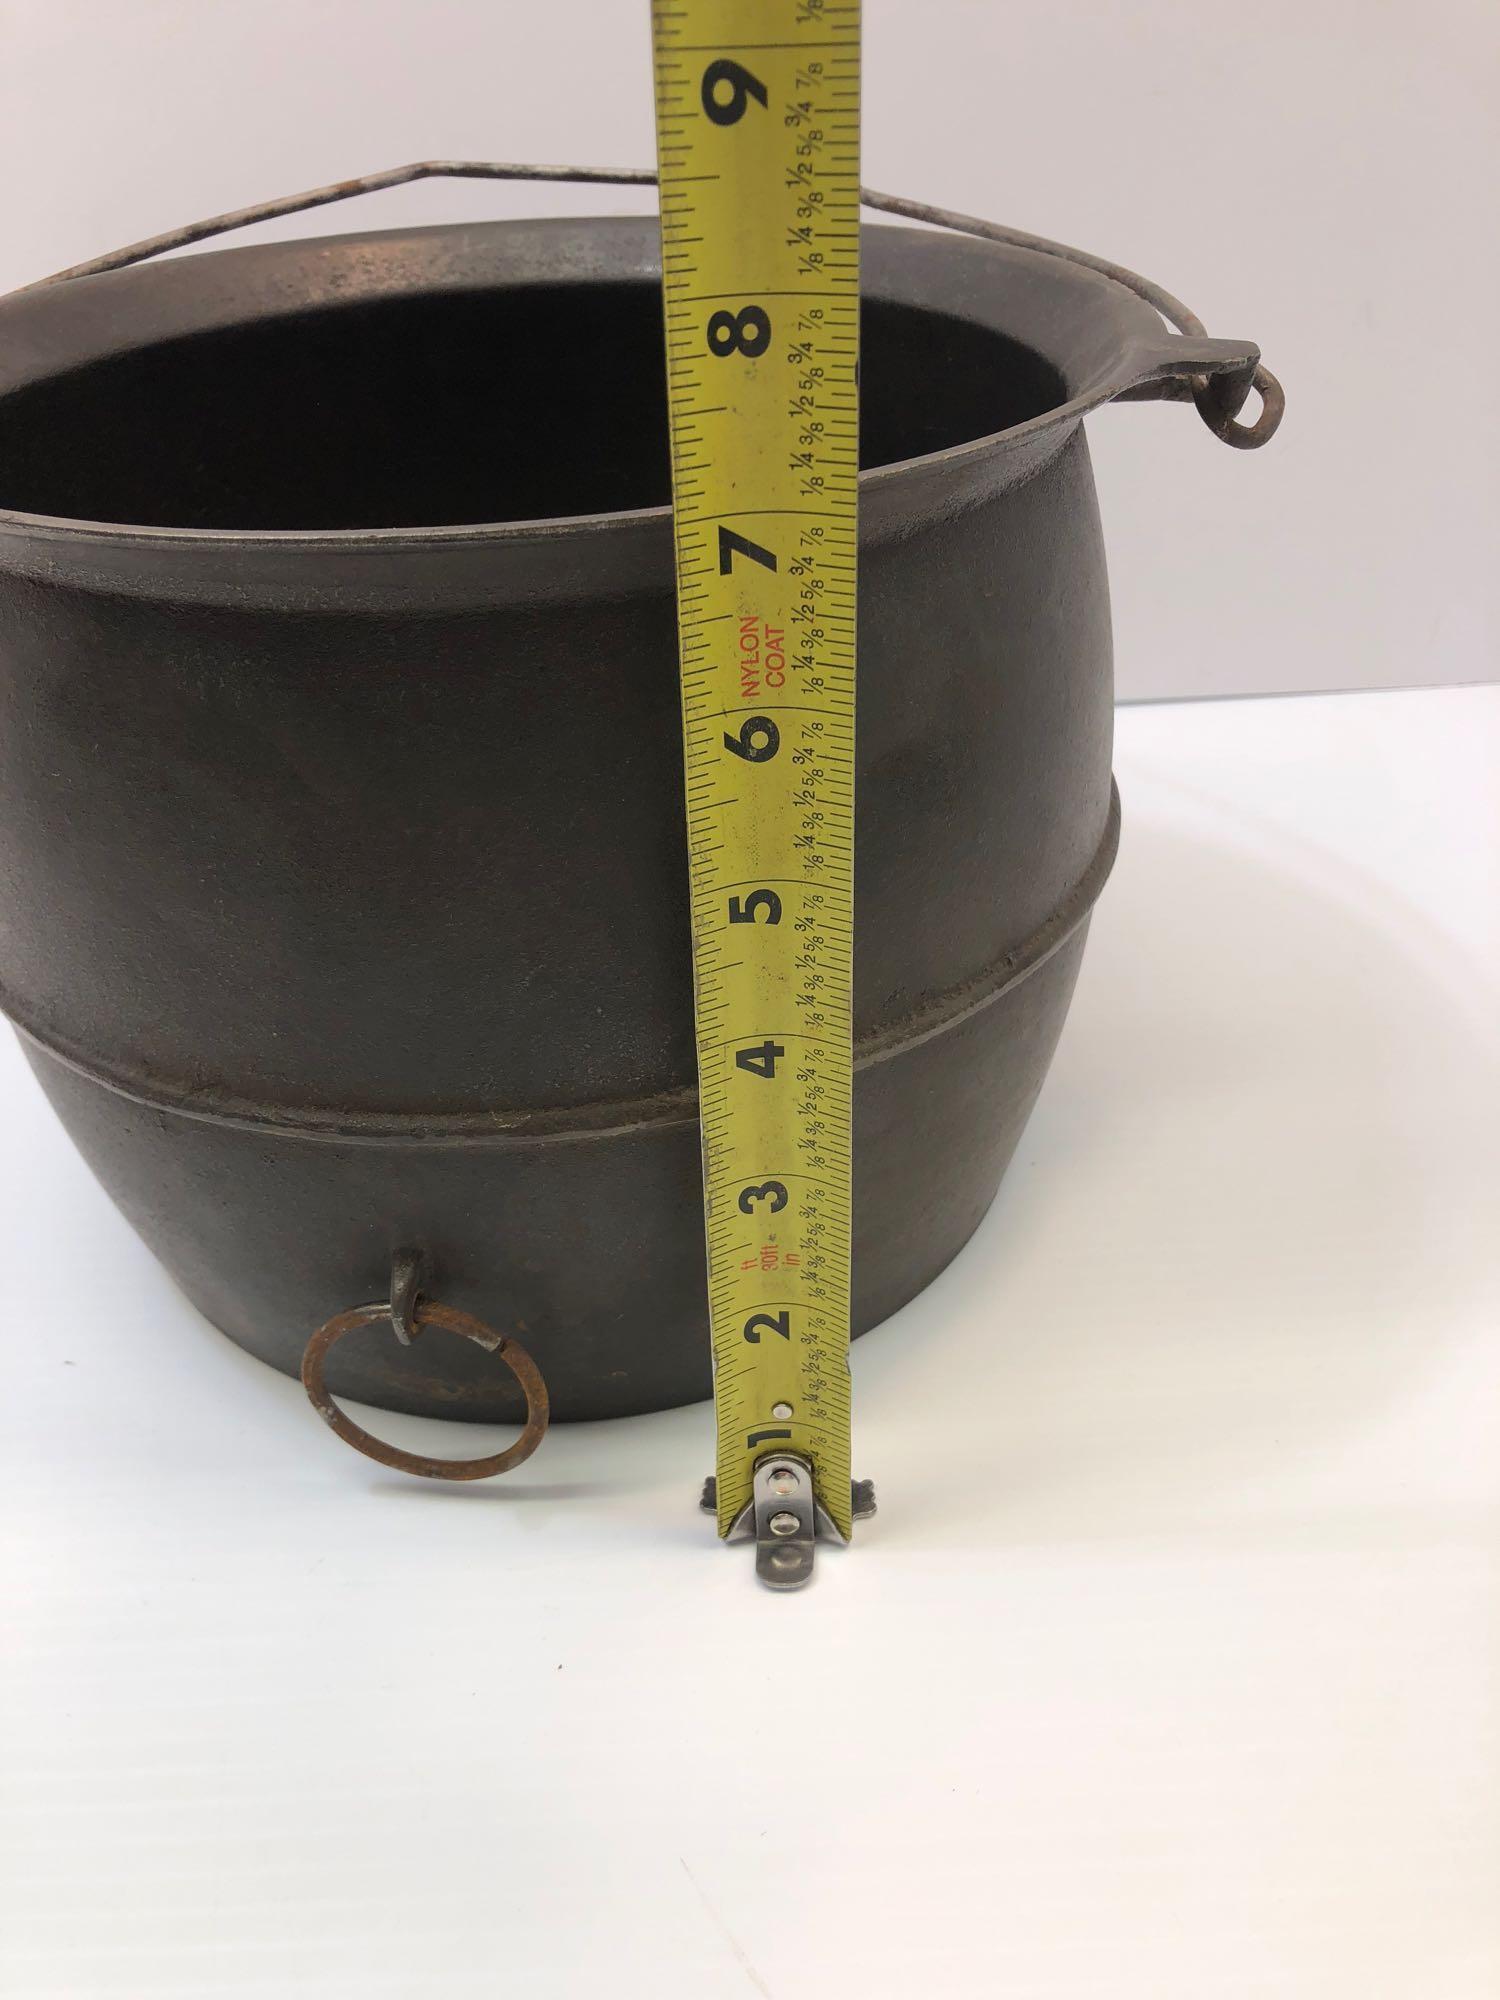 Vintage cast iron GRISWOLD bean pot